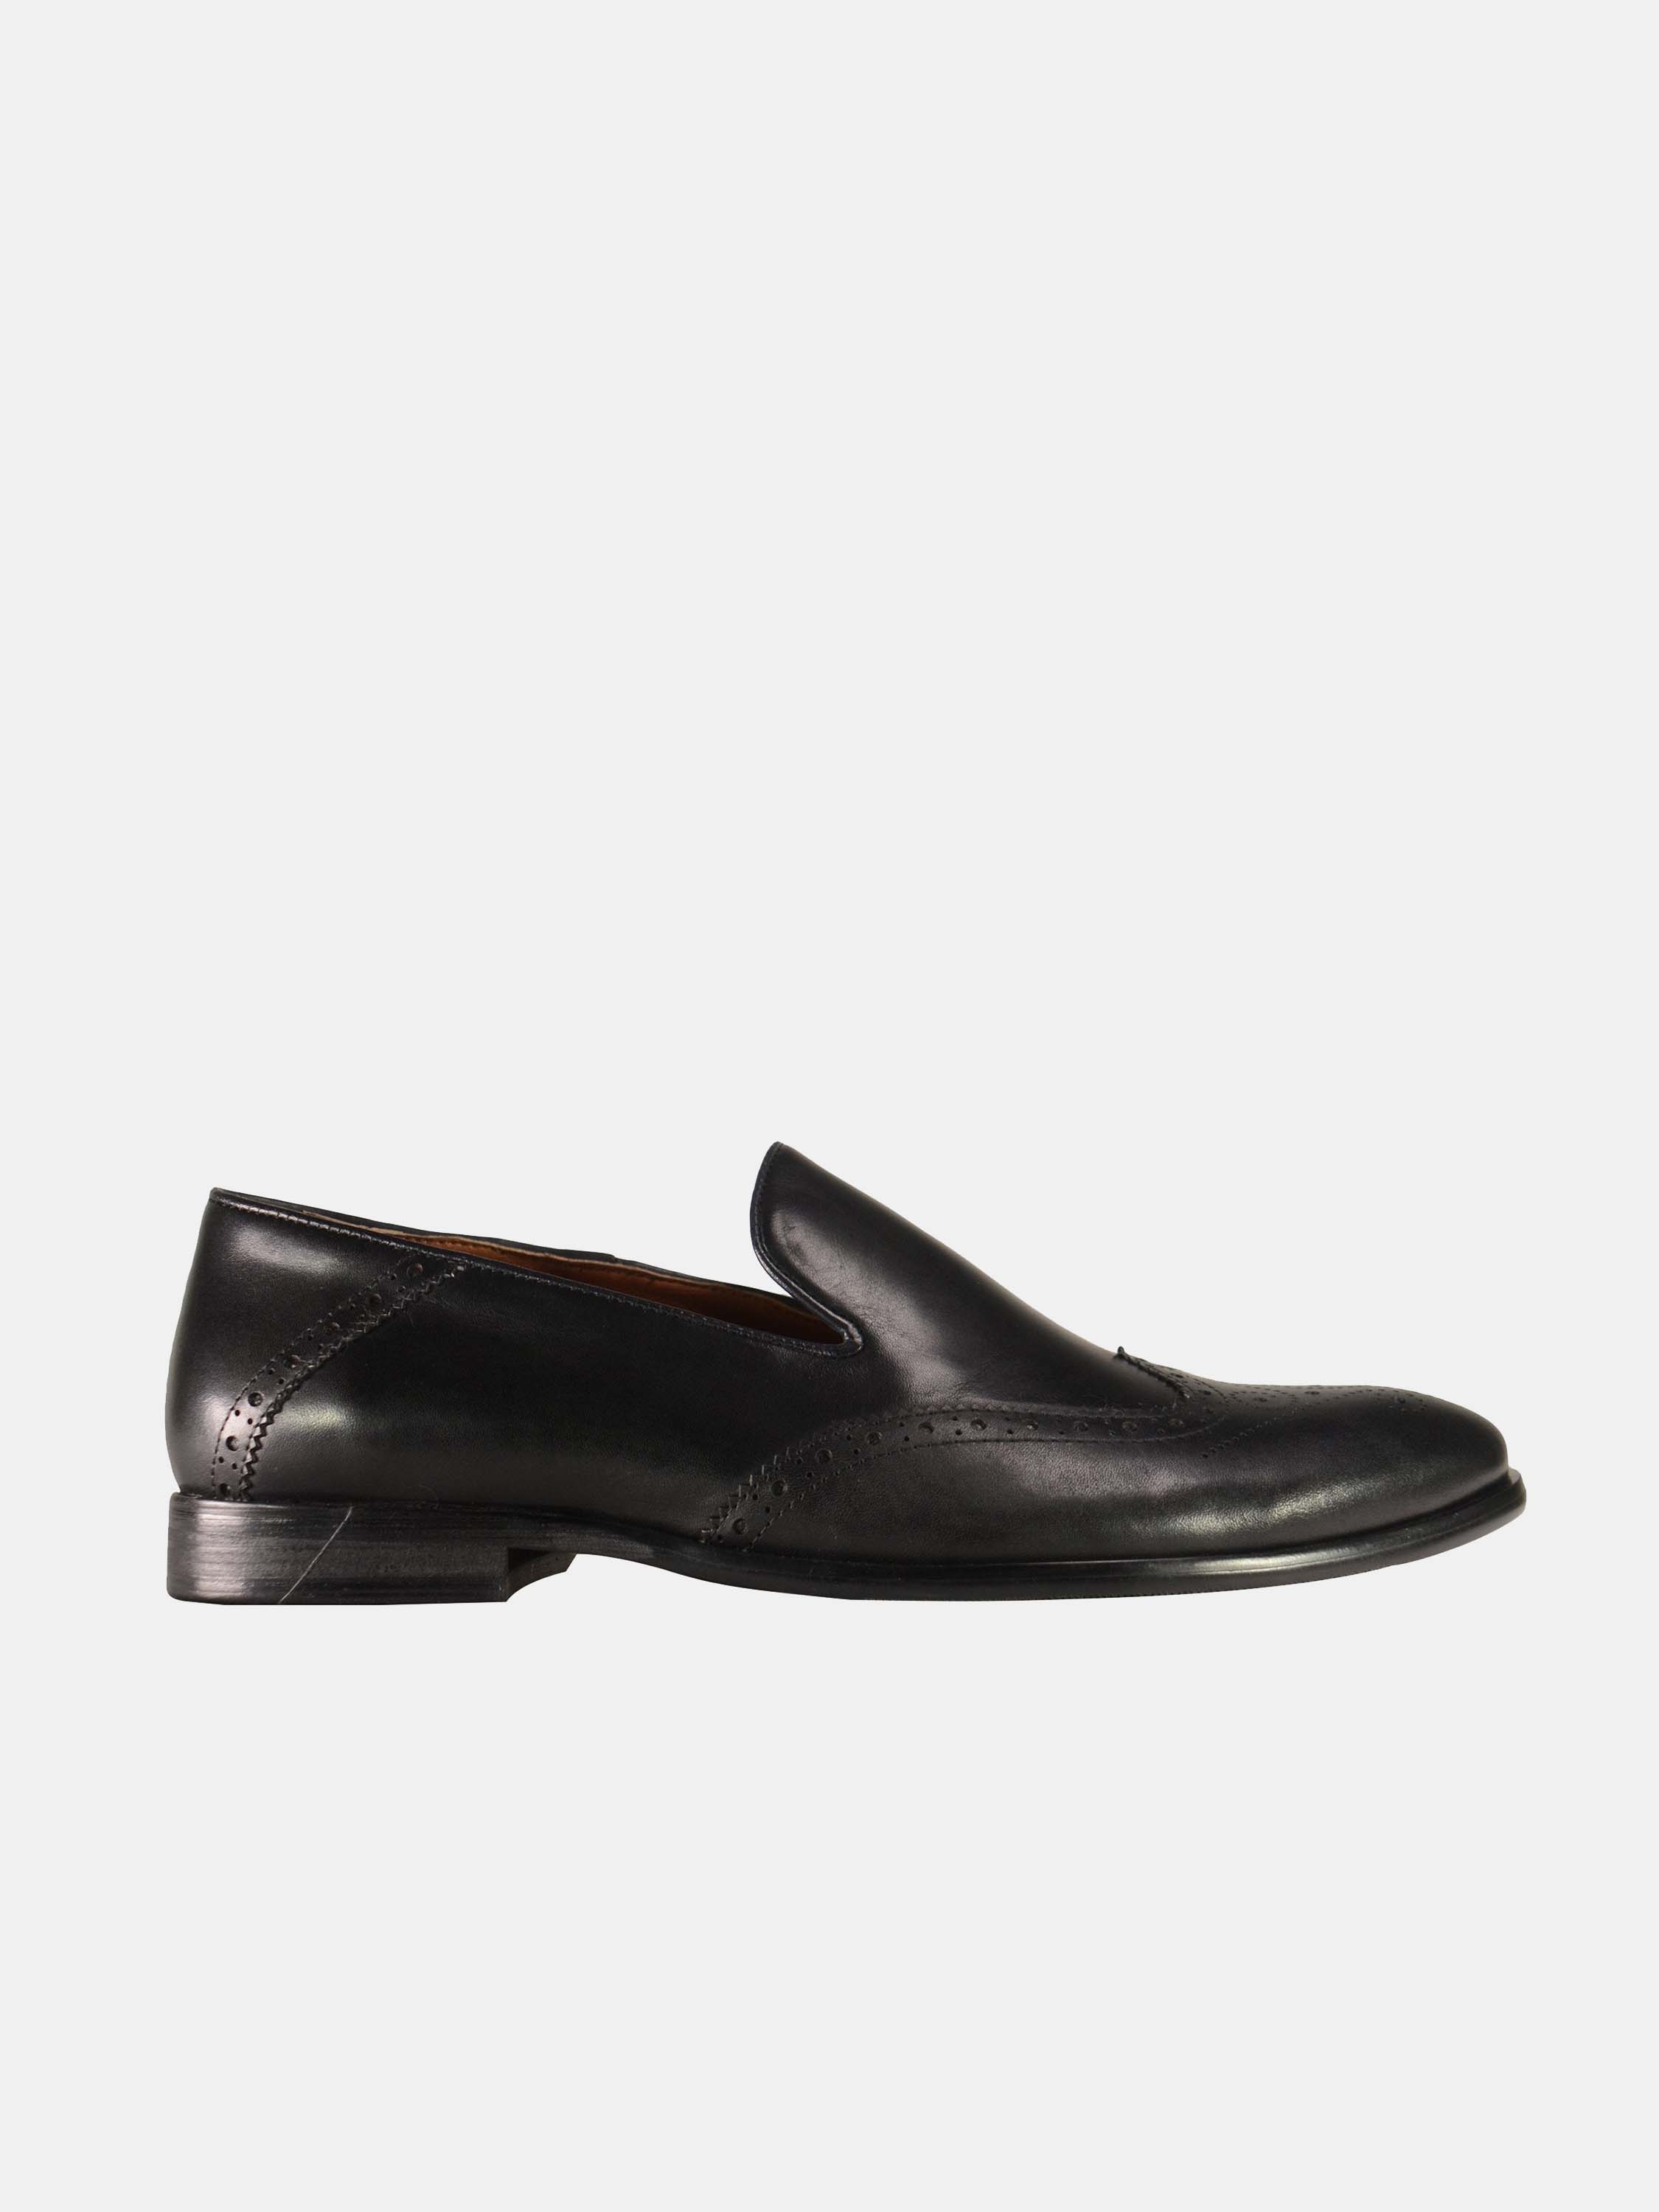 Josef Seibel Slip On Formal Black Leather Shoes #color_Black